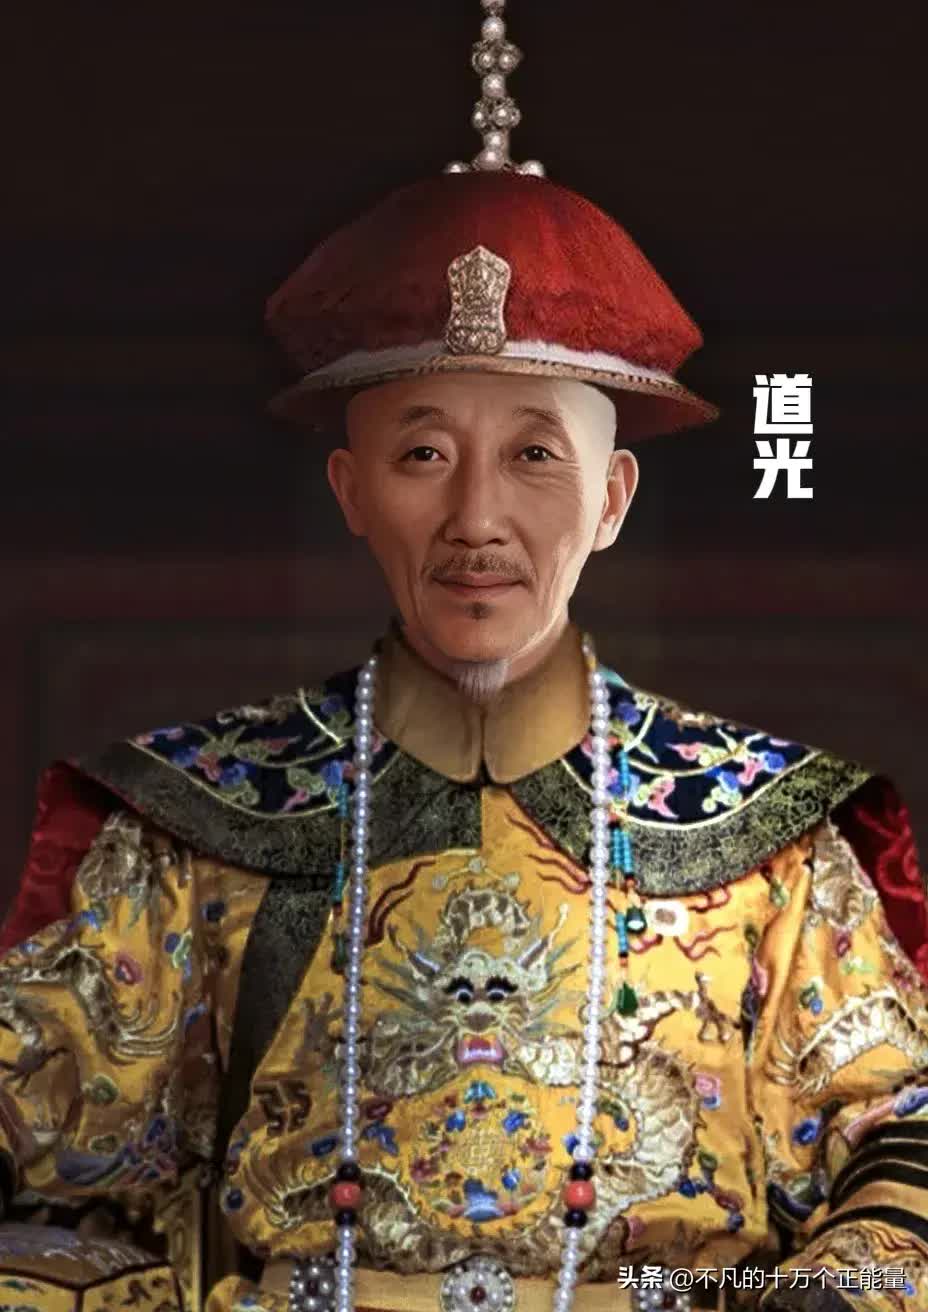 AI thêm màu vào chân dung 12 vị Hoàng đế nhà Thanh: Bất ngờ nhan sắc 